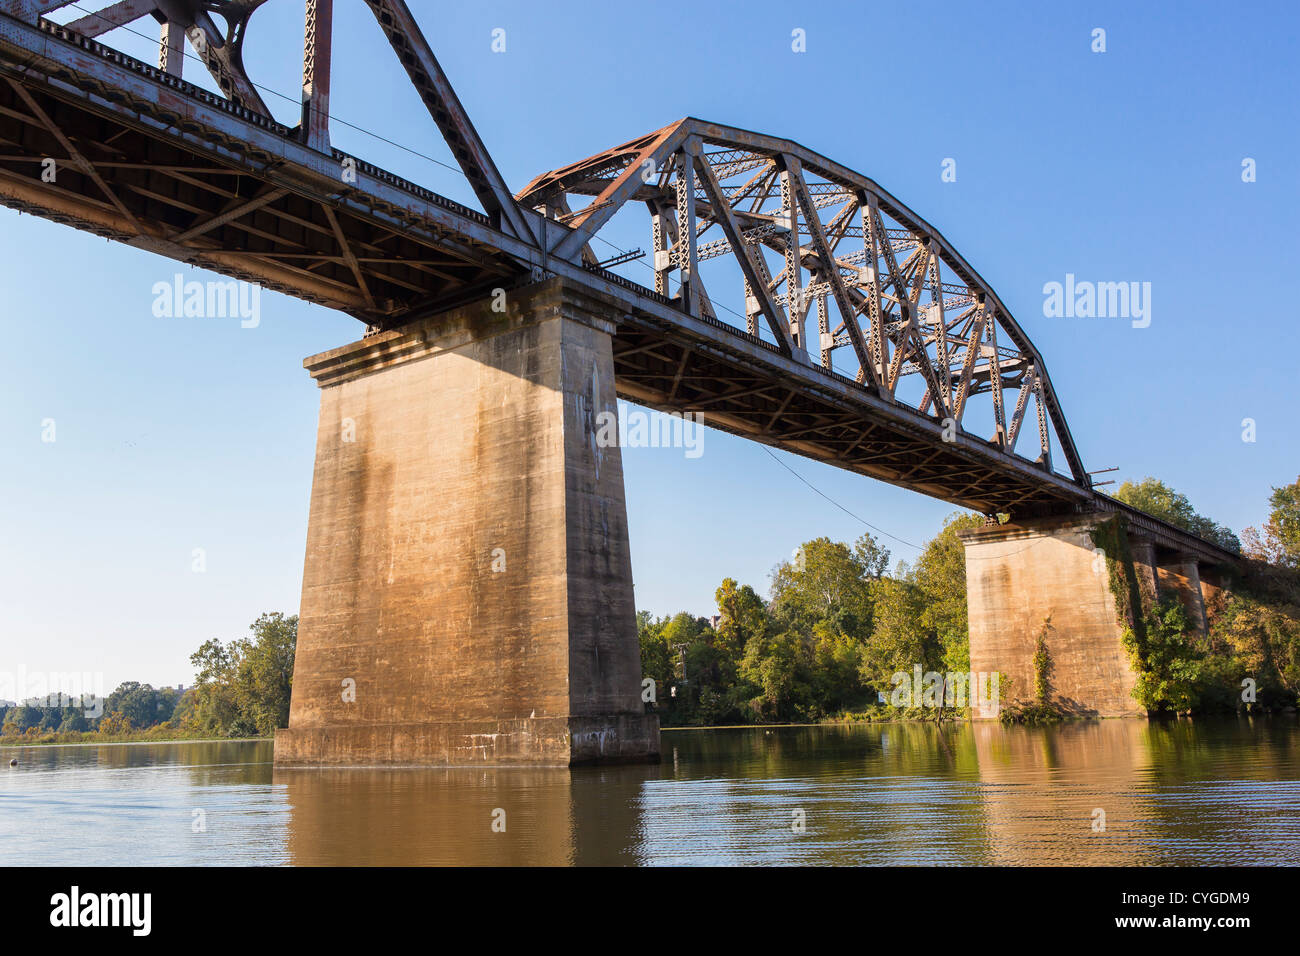 OCCOQUAN, VIRGINIA, USA - Railroad bridge over Occoquon River. Stock Photo